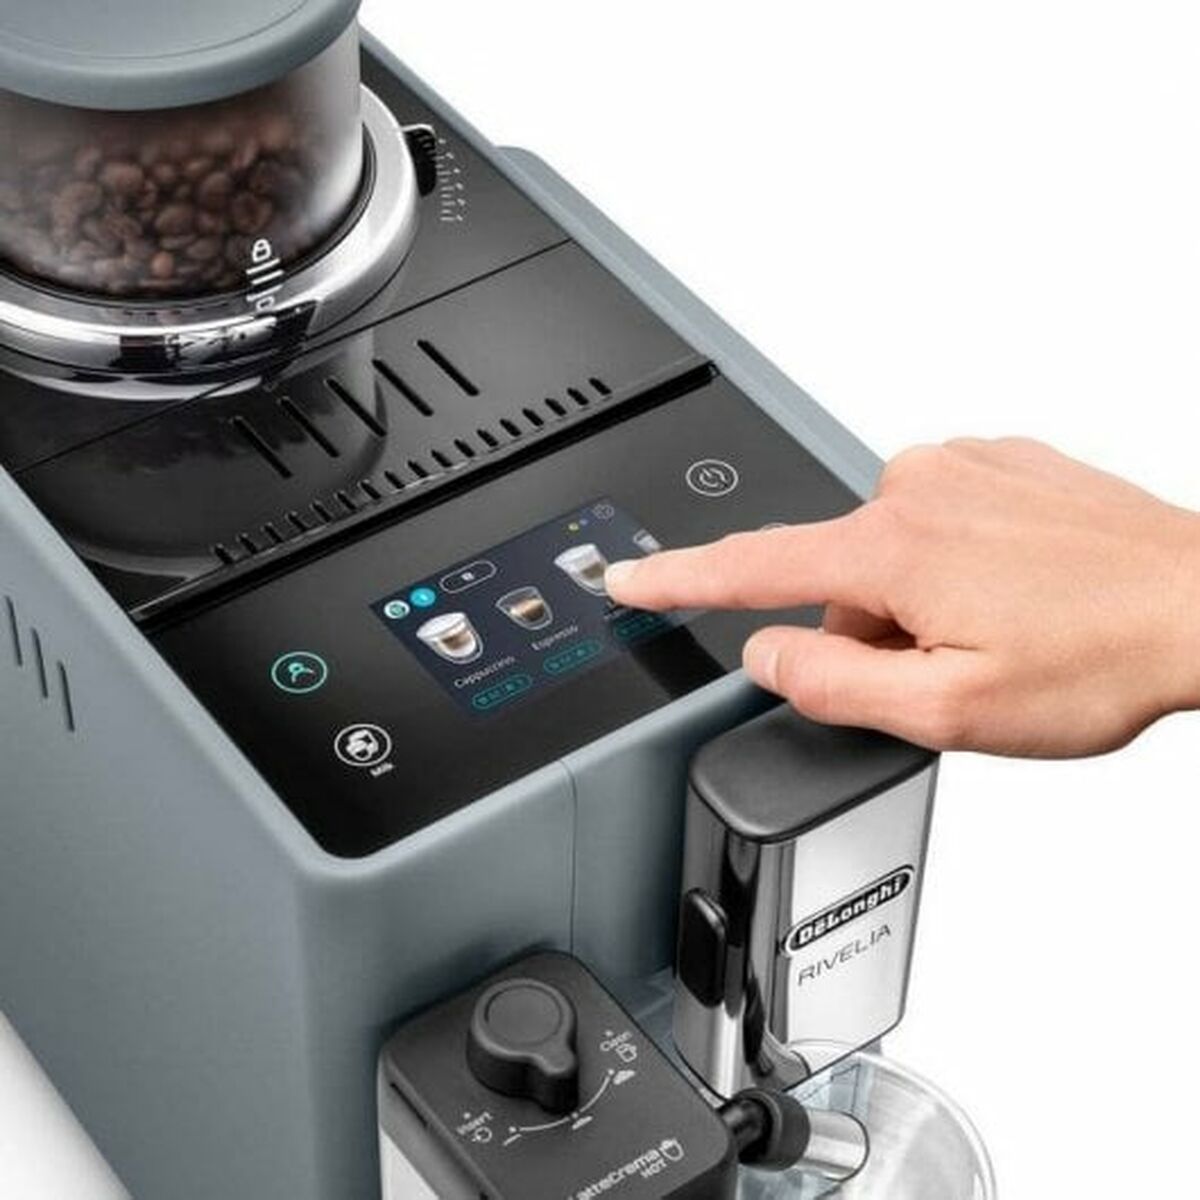 Superautomatisch koffiezetapparaat DeLonghi EXAM440.55.G